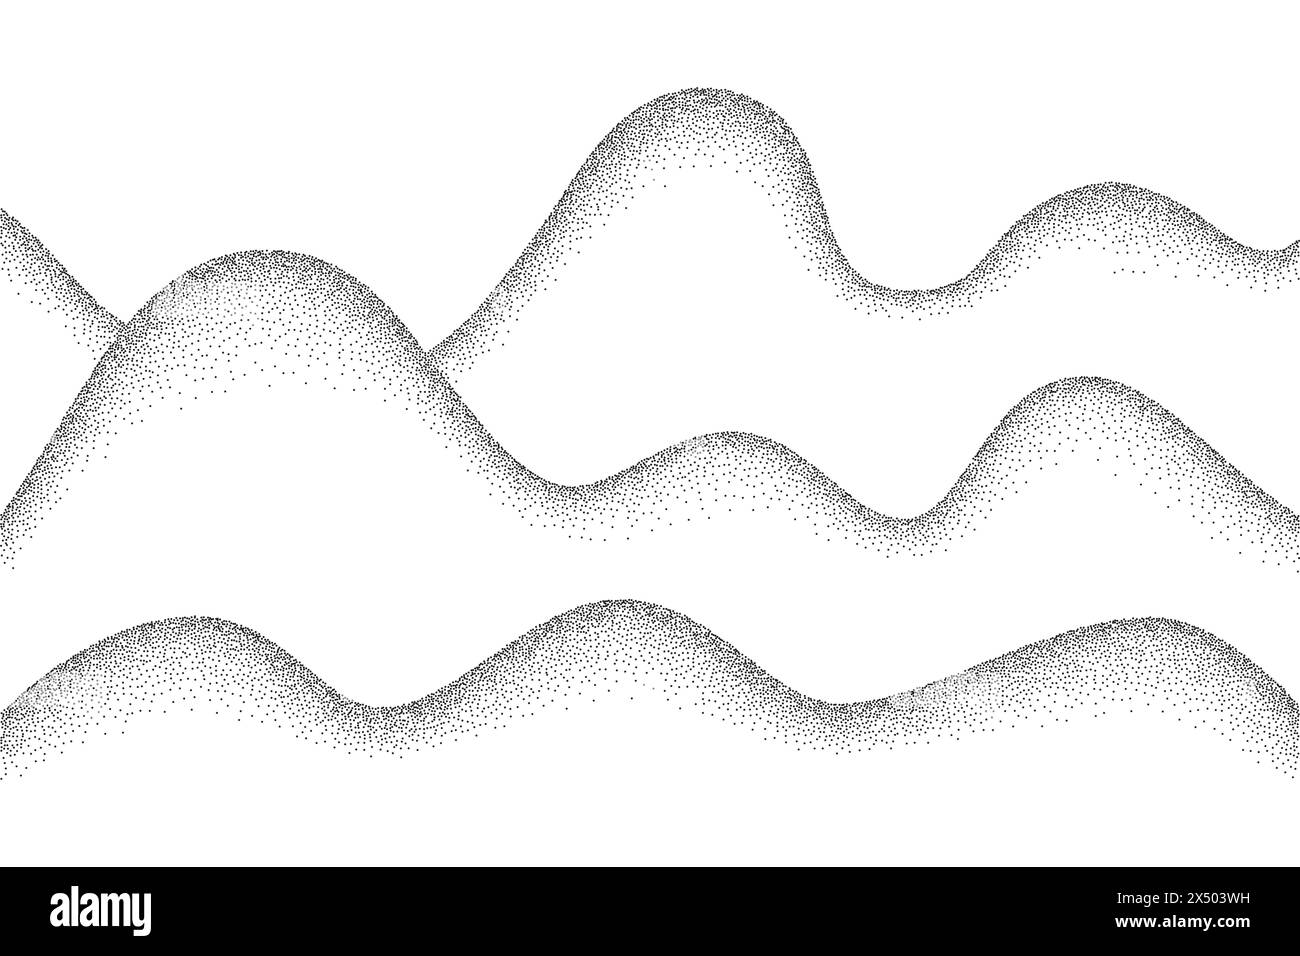 Hintergrund für Wellenstruktur mit Stippelmuster. Schwarzes Rauschen Punktstruktur, abstrakte Punktstippellinien, Sandkorneffekt, Vektorillustration isoliert auf Stock Vektor